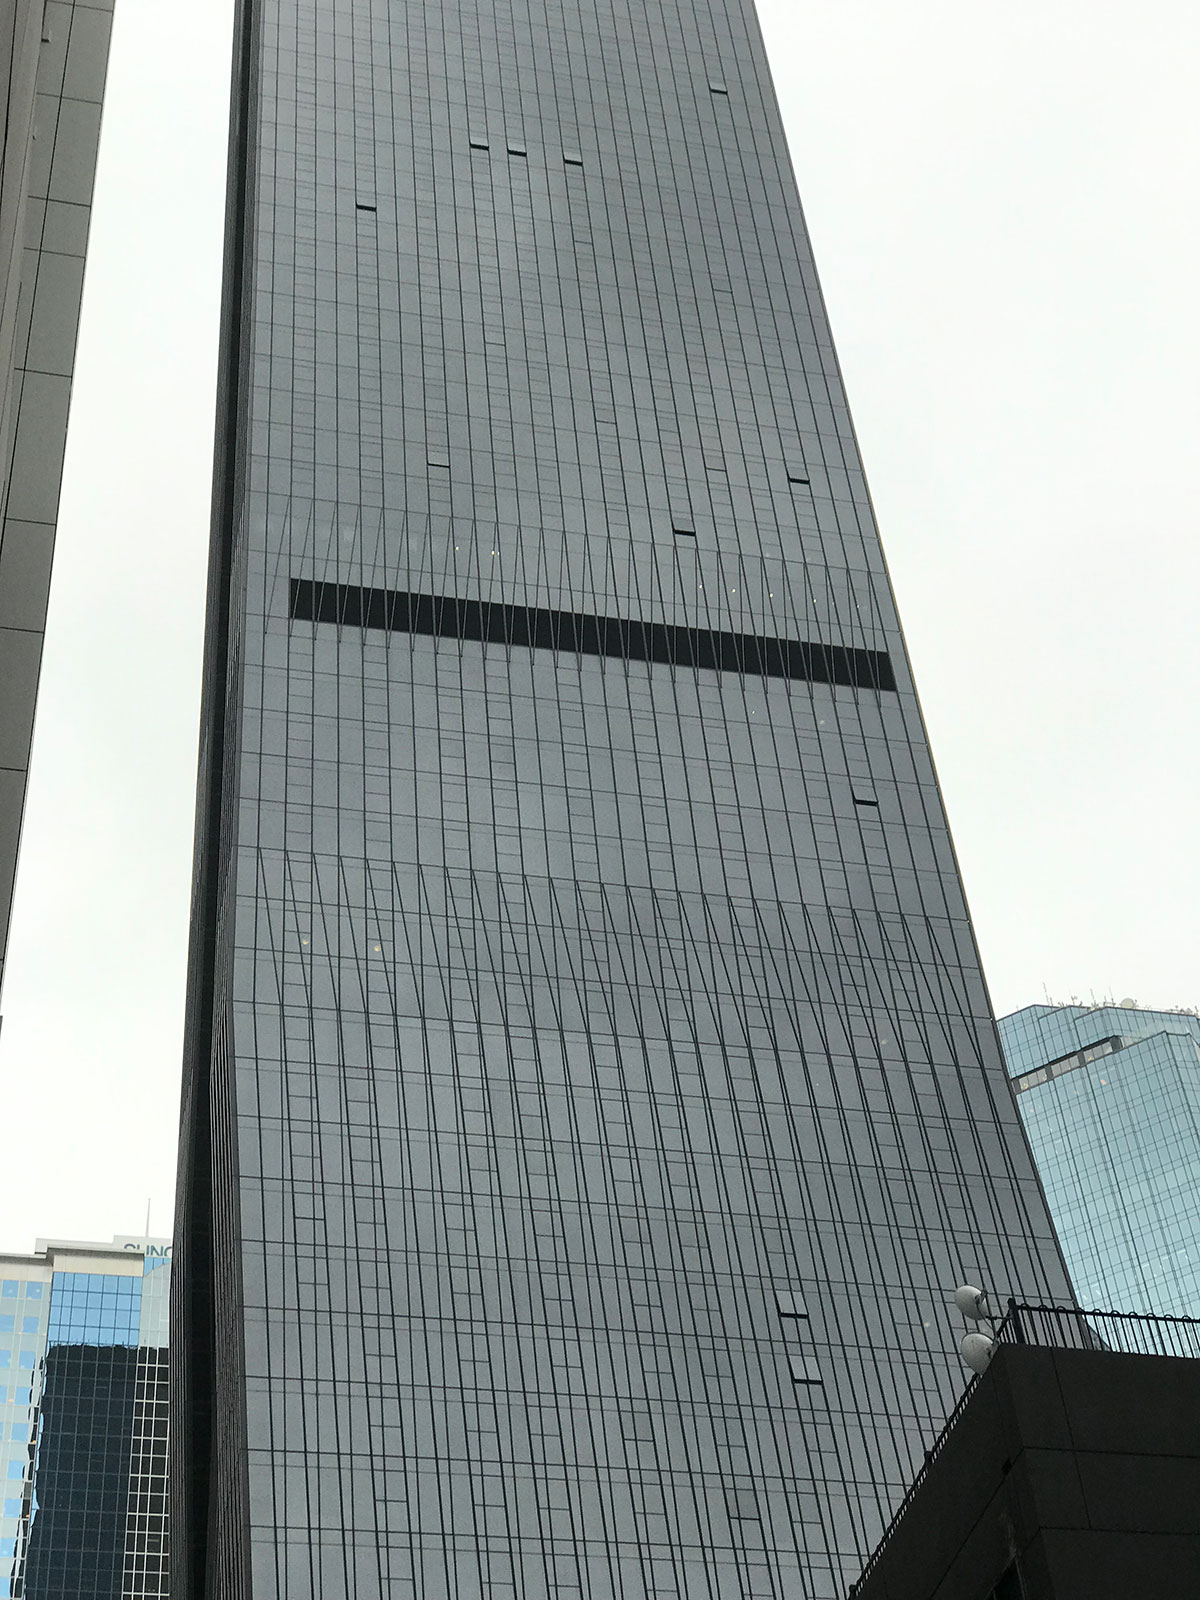 メルボルンCBDの高層ビル